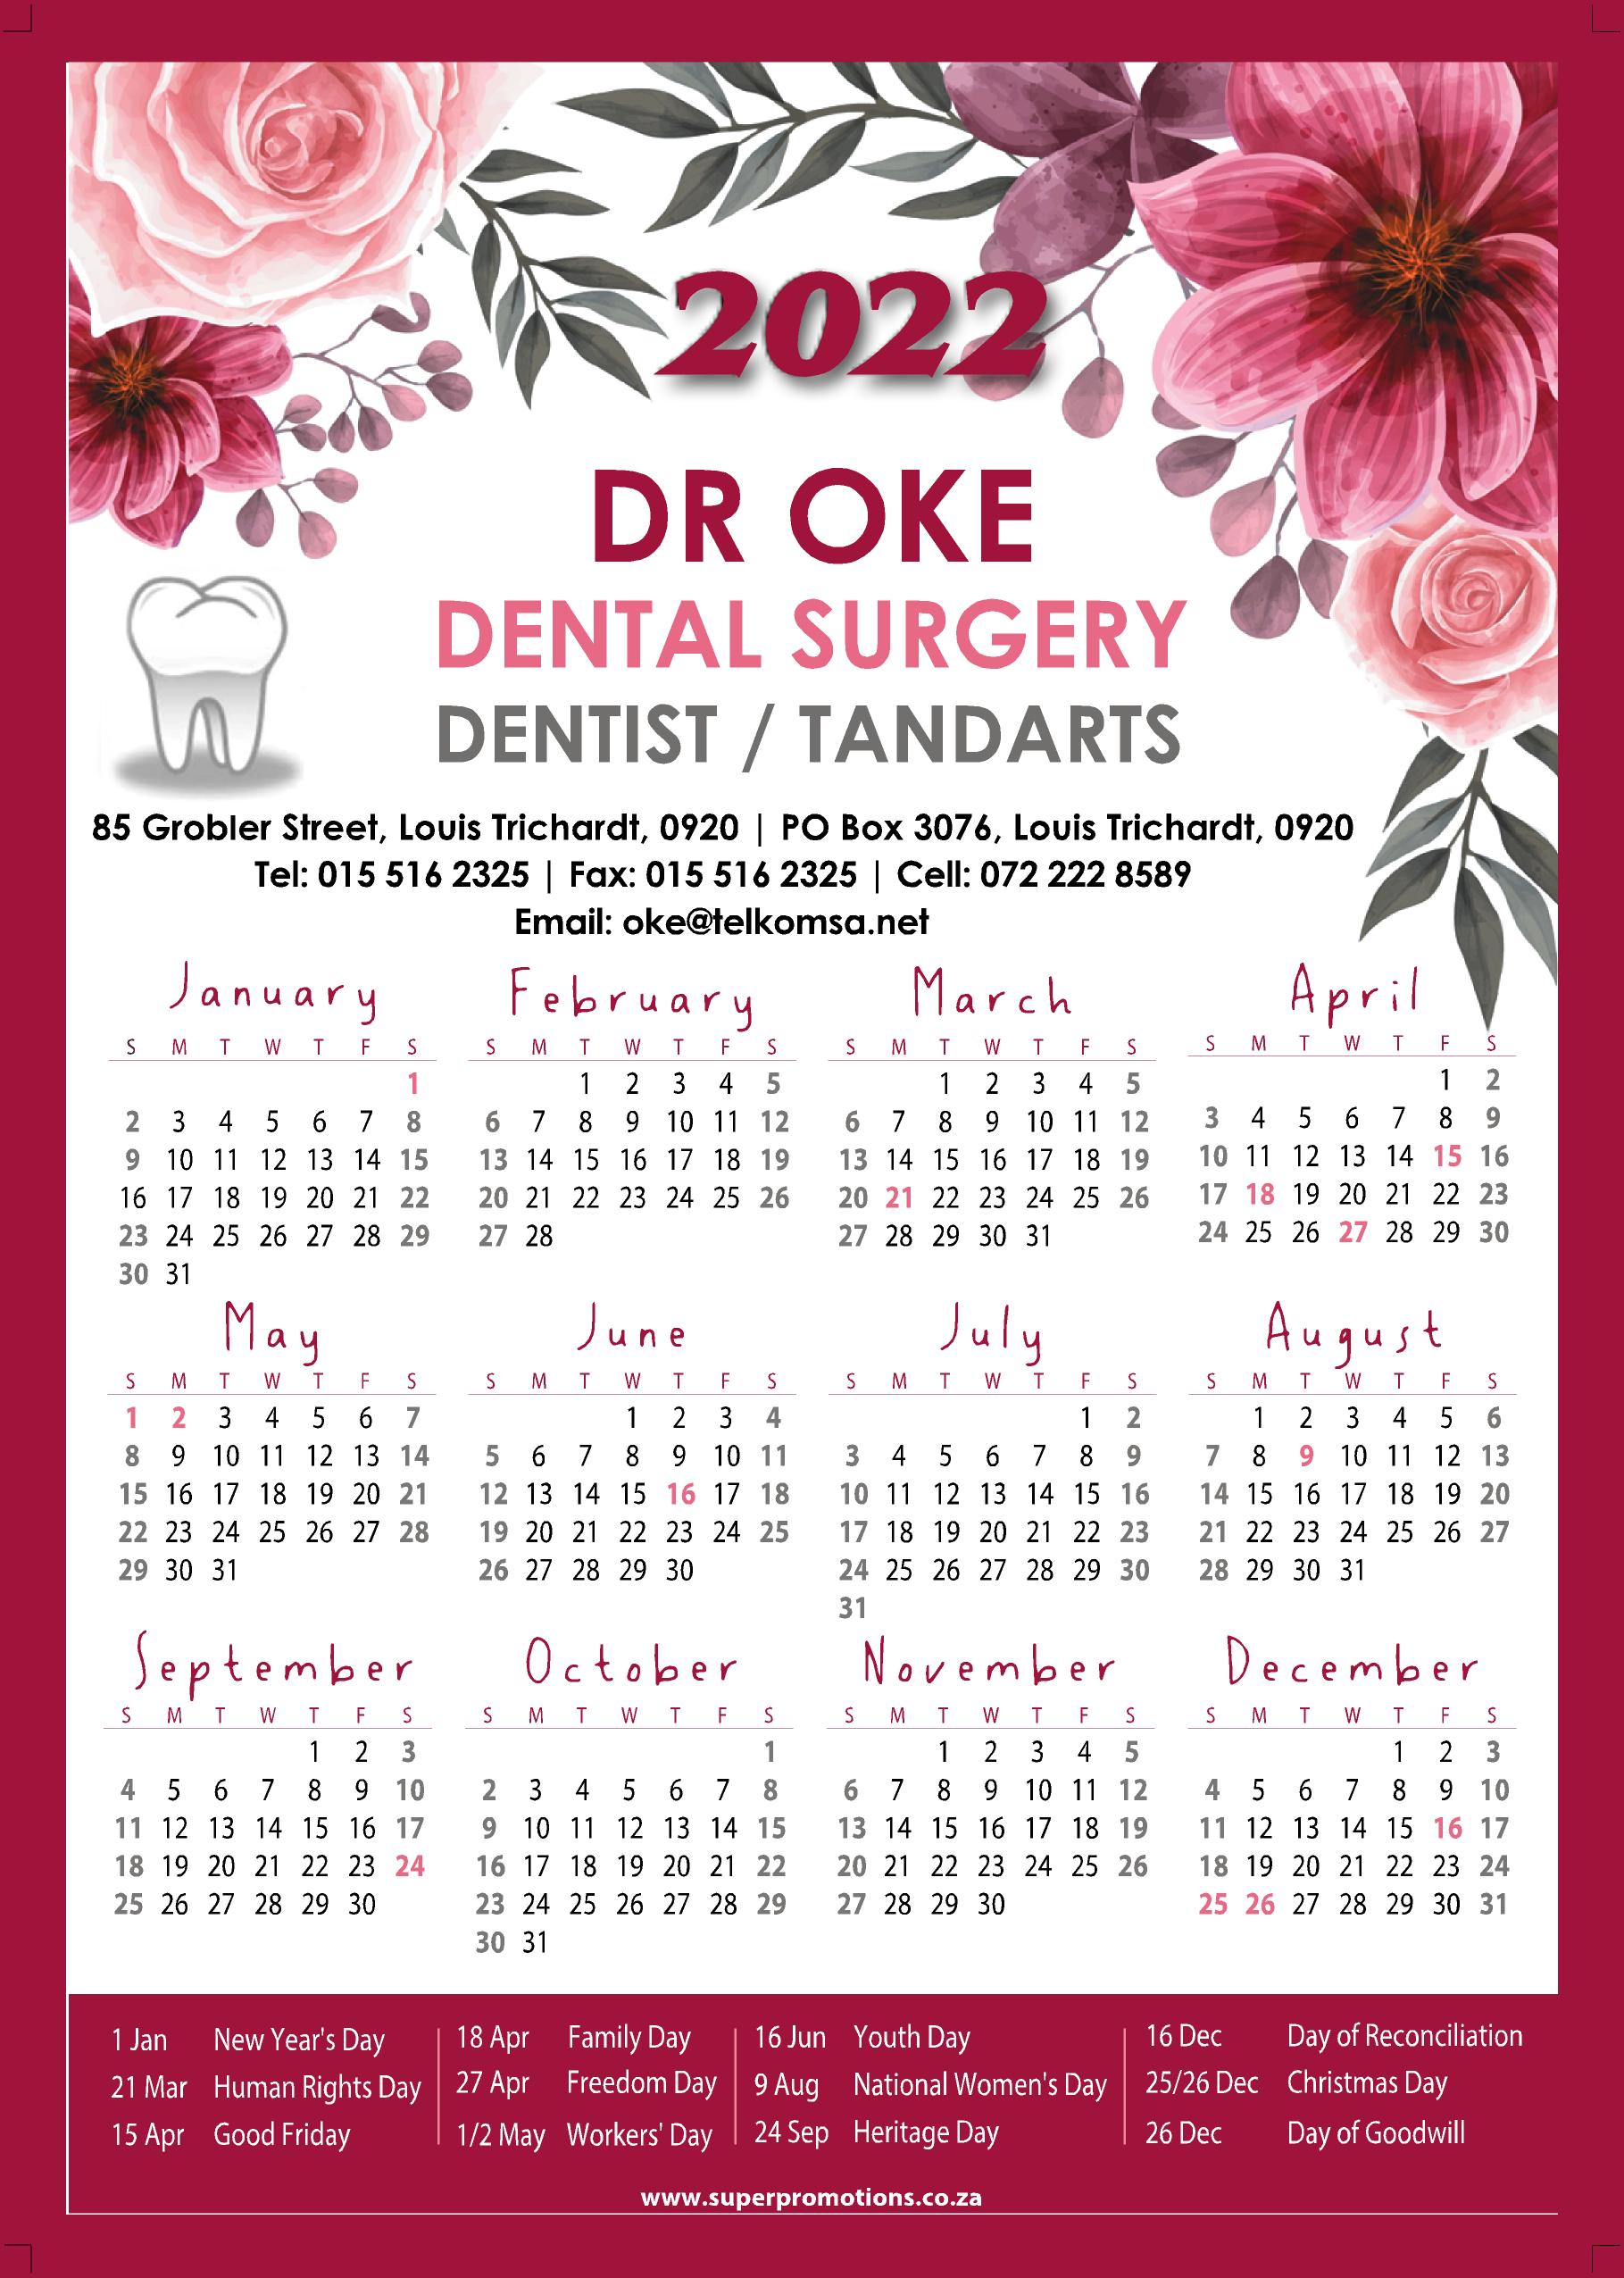 Dr Oke Dental Sugeon 2022